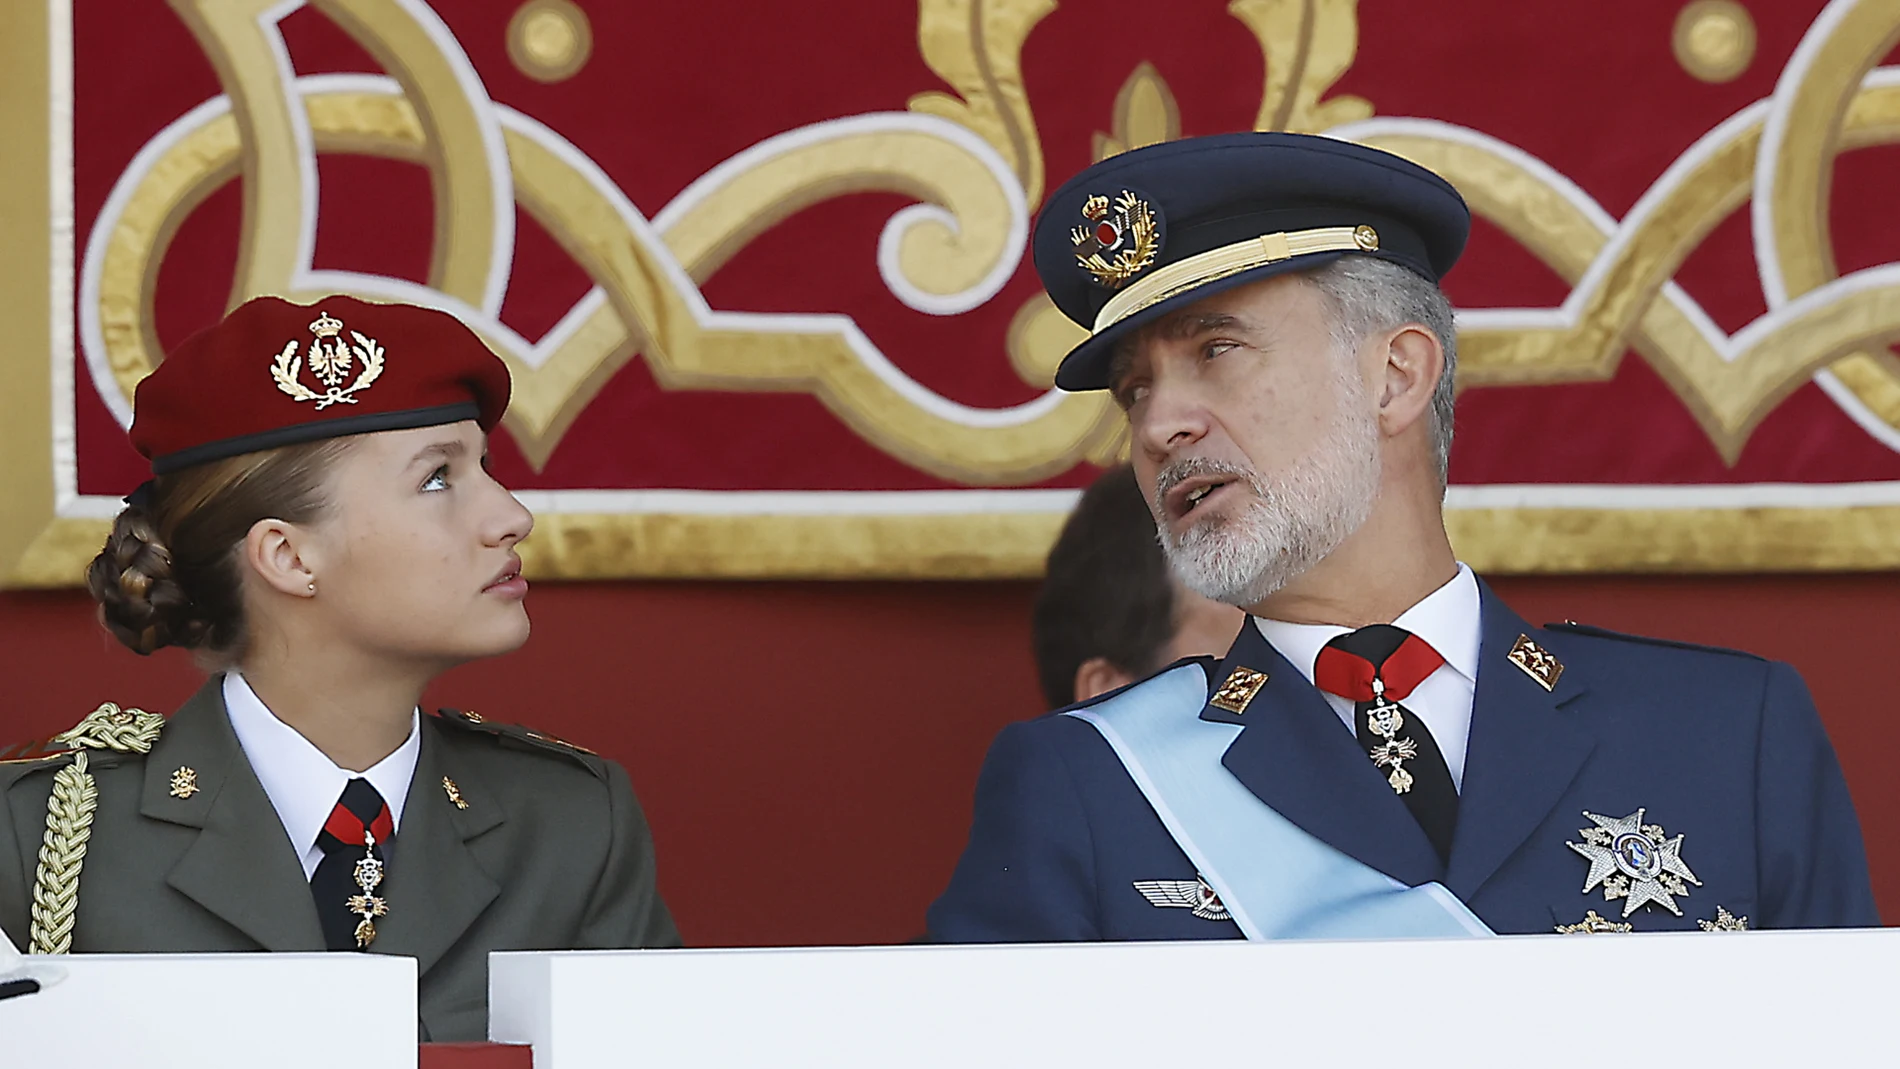 La princesa Leonor y el Rey Felipe VI en el Día de la Fiesta Nacional